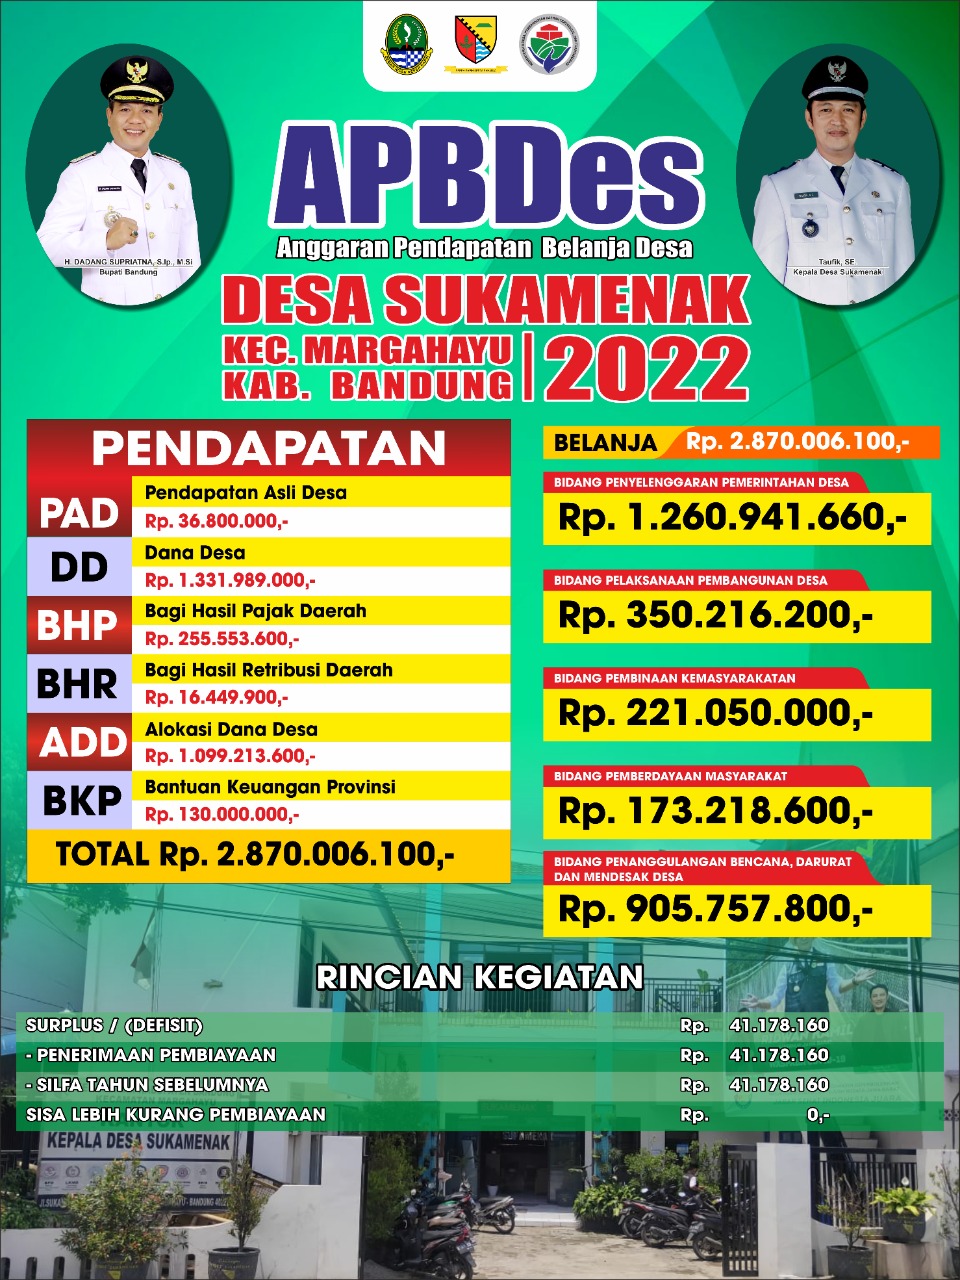 Realisasi APBDes 2022